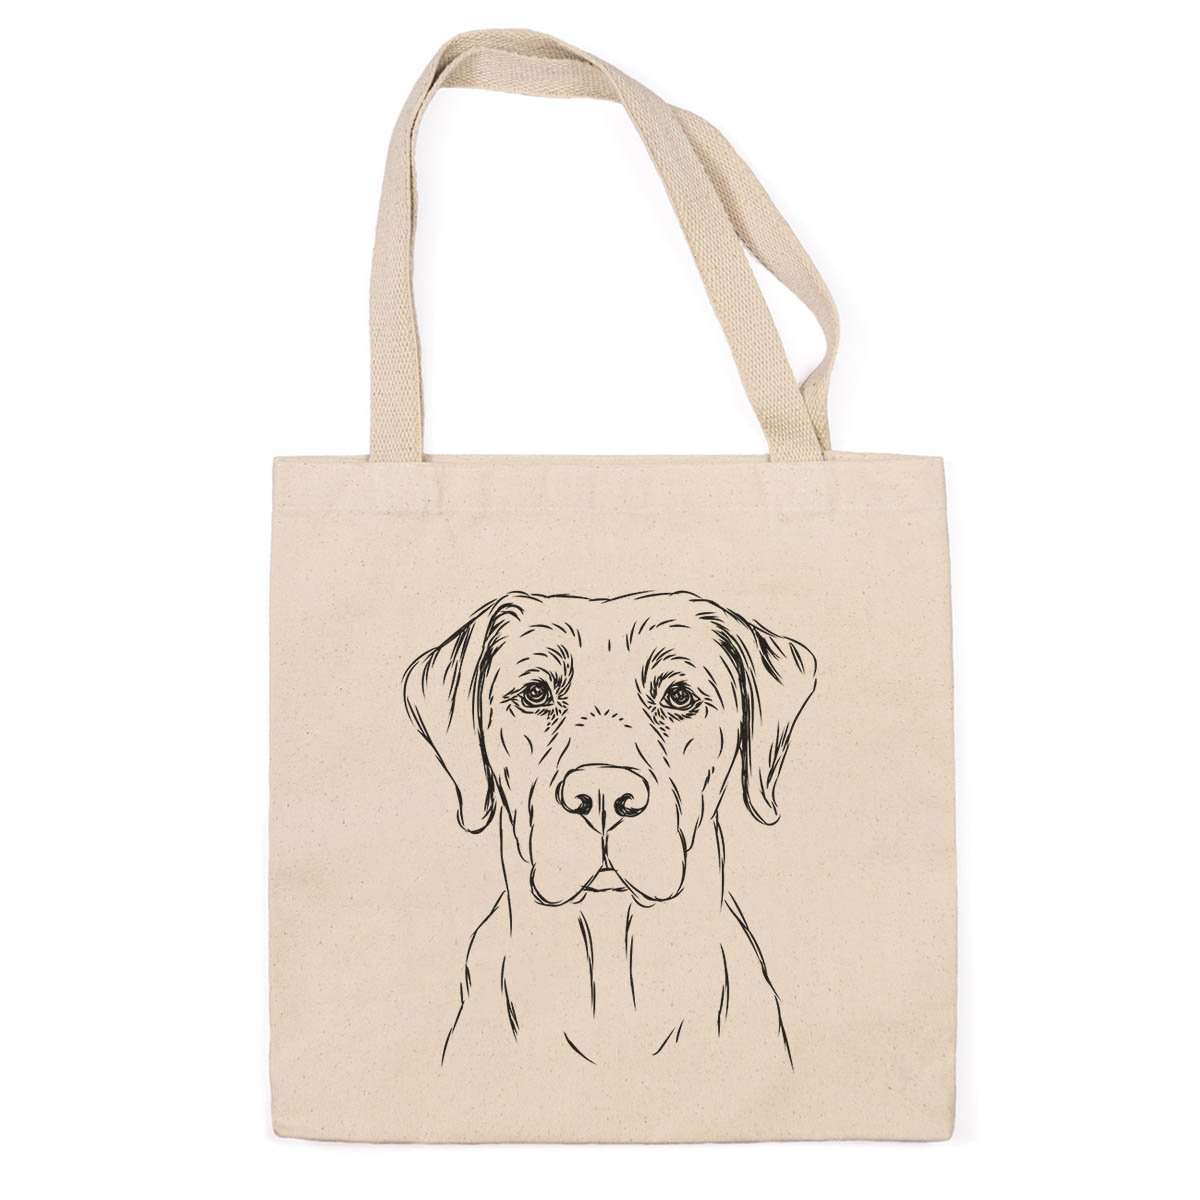 Rowdy the Labrador - Tote Bag